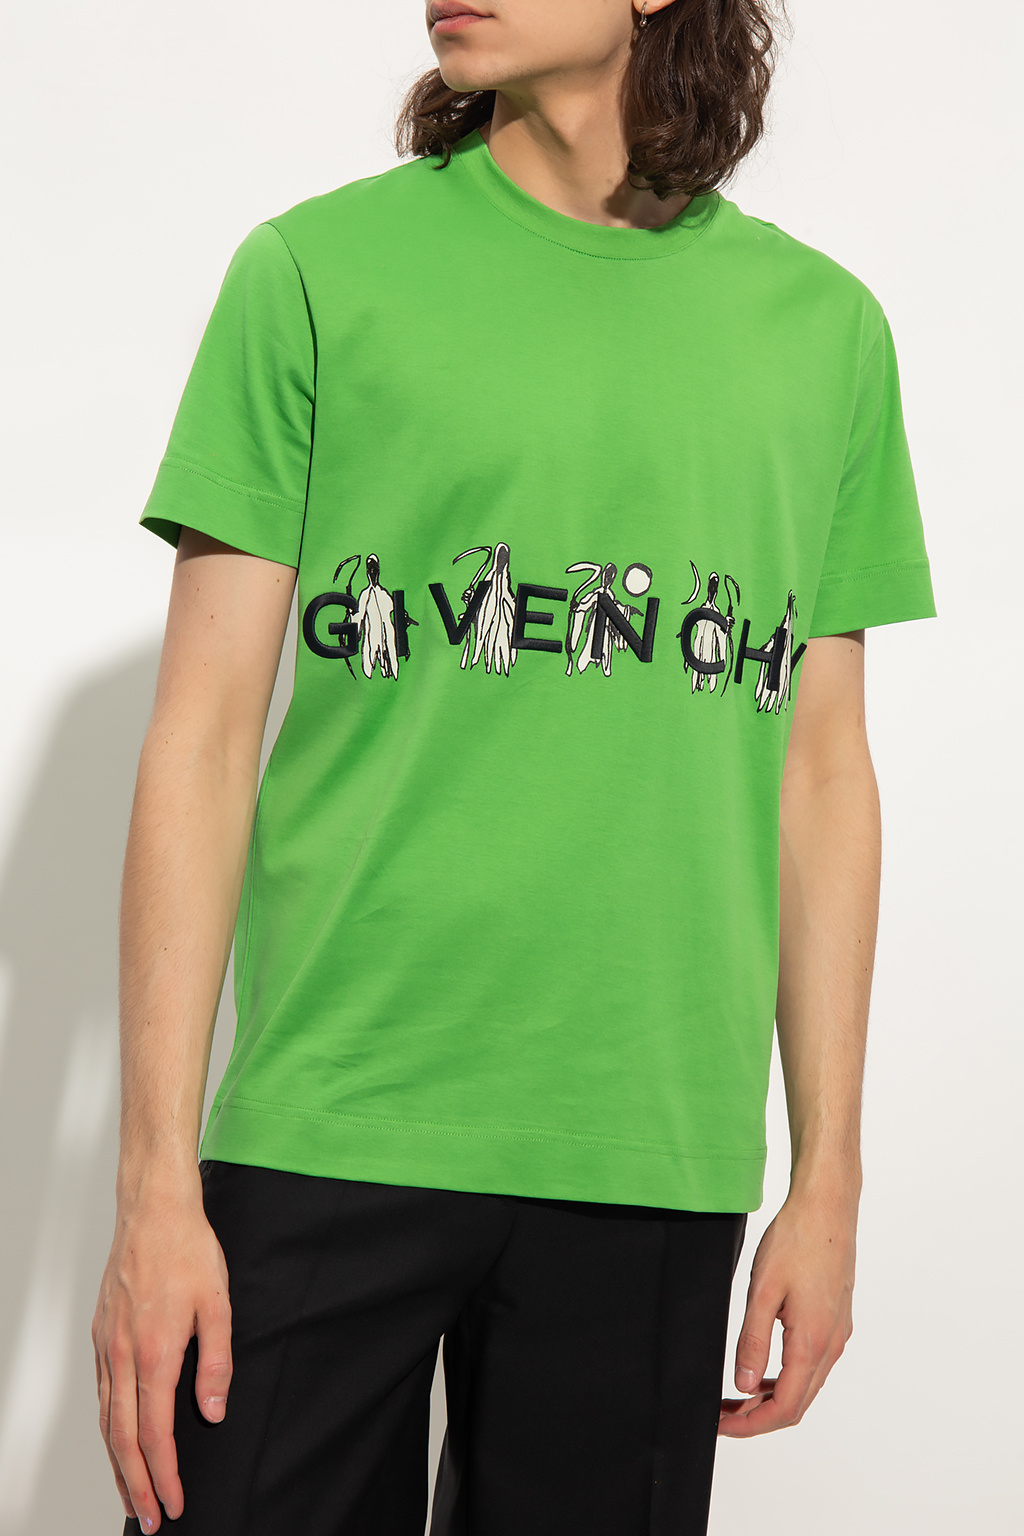 Givenchy a fait appel au directeur artistique italien de la maison Givenchy  Givenchy - вовняна спідниця givenchy оригінал - IetpShops Sweden